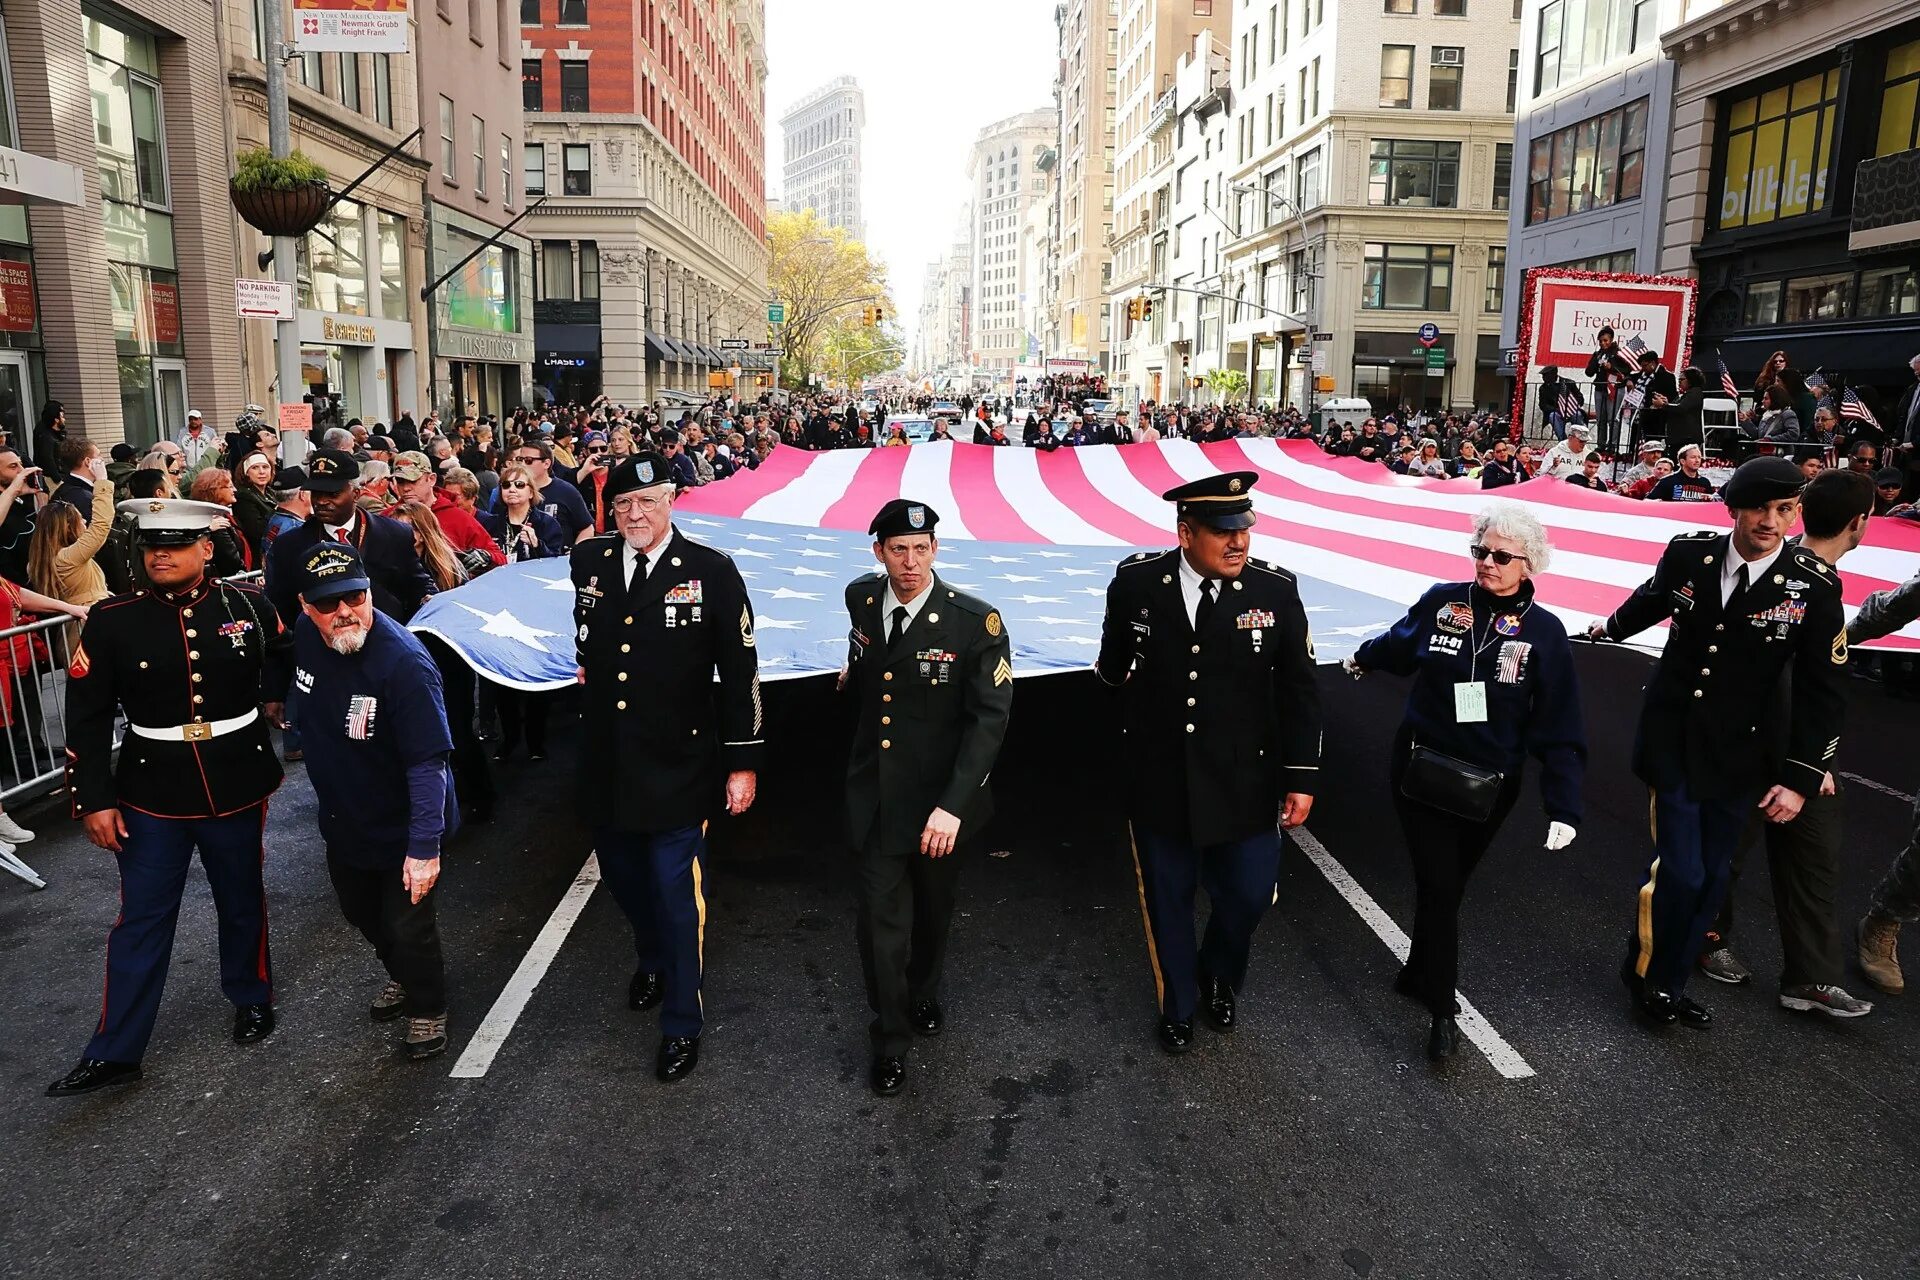 Veterans day. Ветеранс Дэй. День ветеранов 11 ноября в США. Veterans Day в США. Парад ветеранов США.